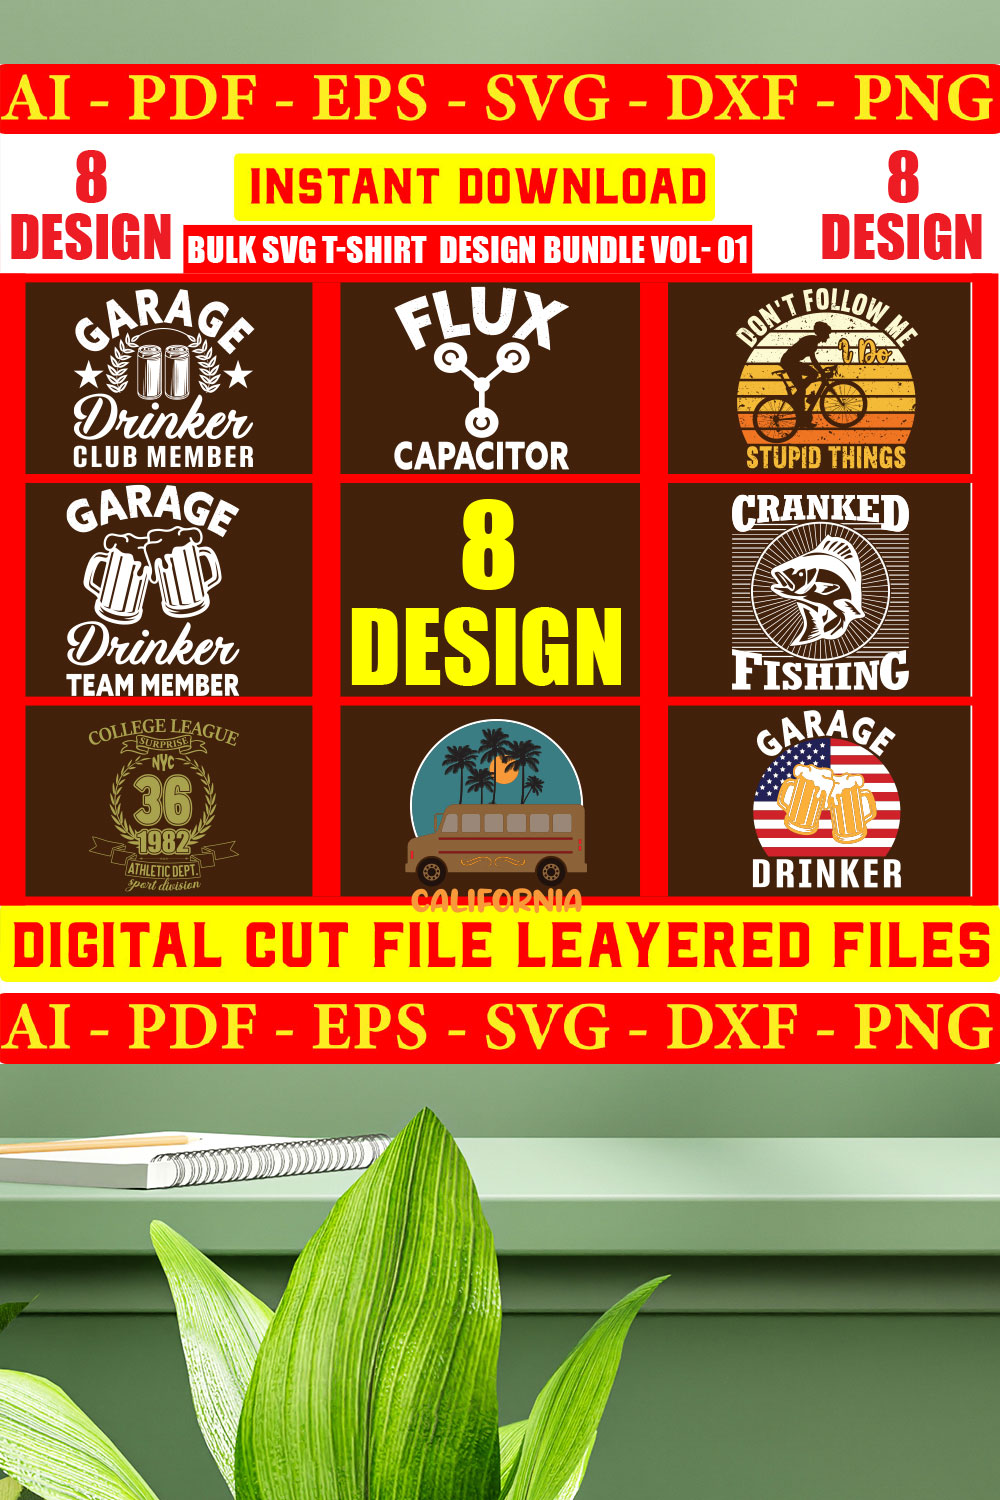 Bulk SVG T-shirt Design Bundle Vol- 06 pinterest preview image.